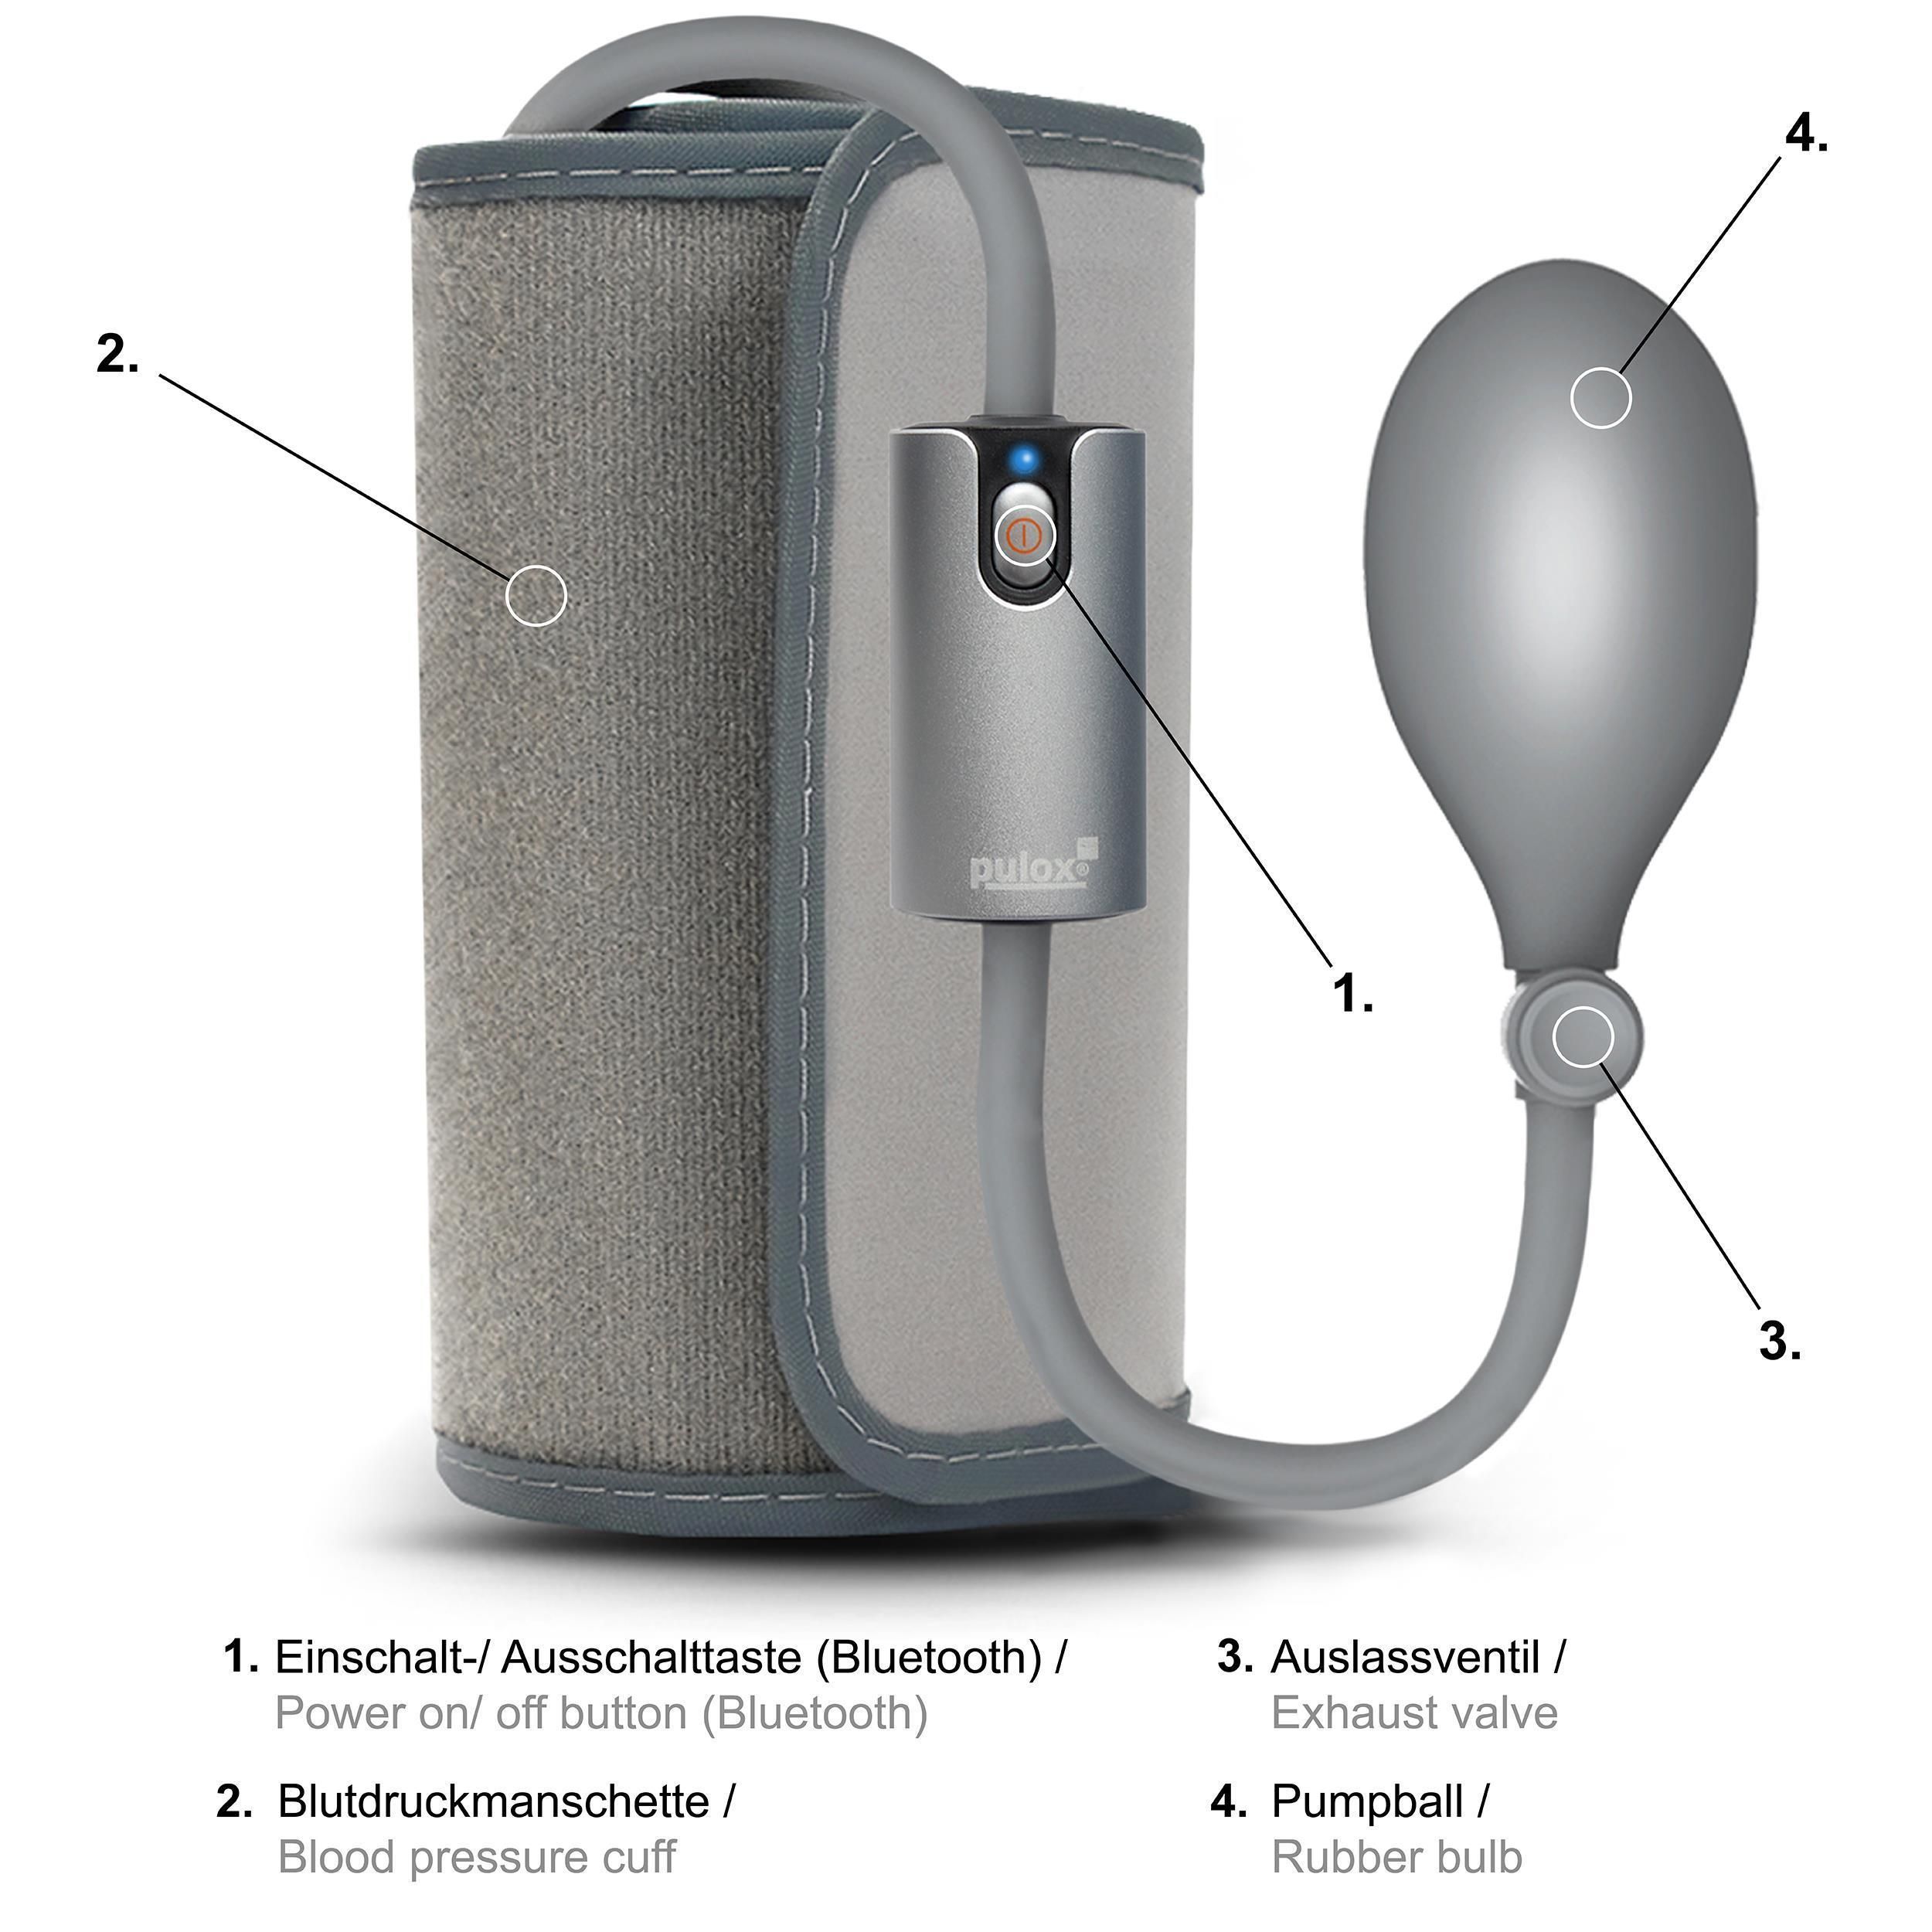 pulox by Viatom - AirBP - Oberarm-Blutdruckmessgerät mit Bluetooth und App für iOS & Android